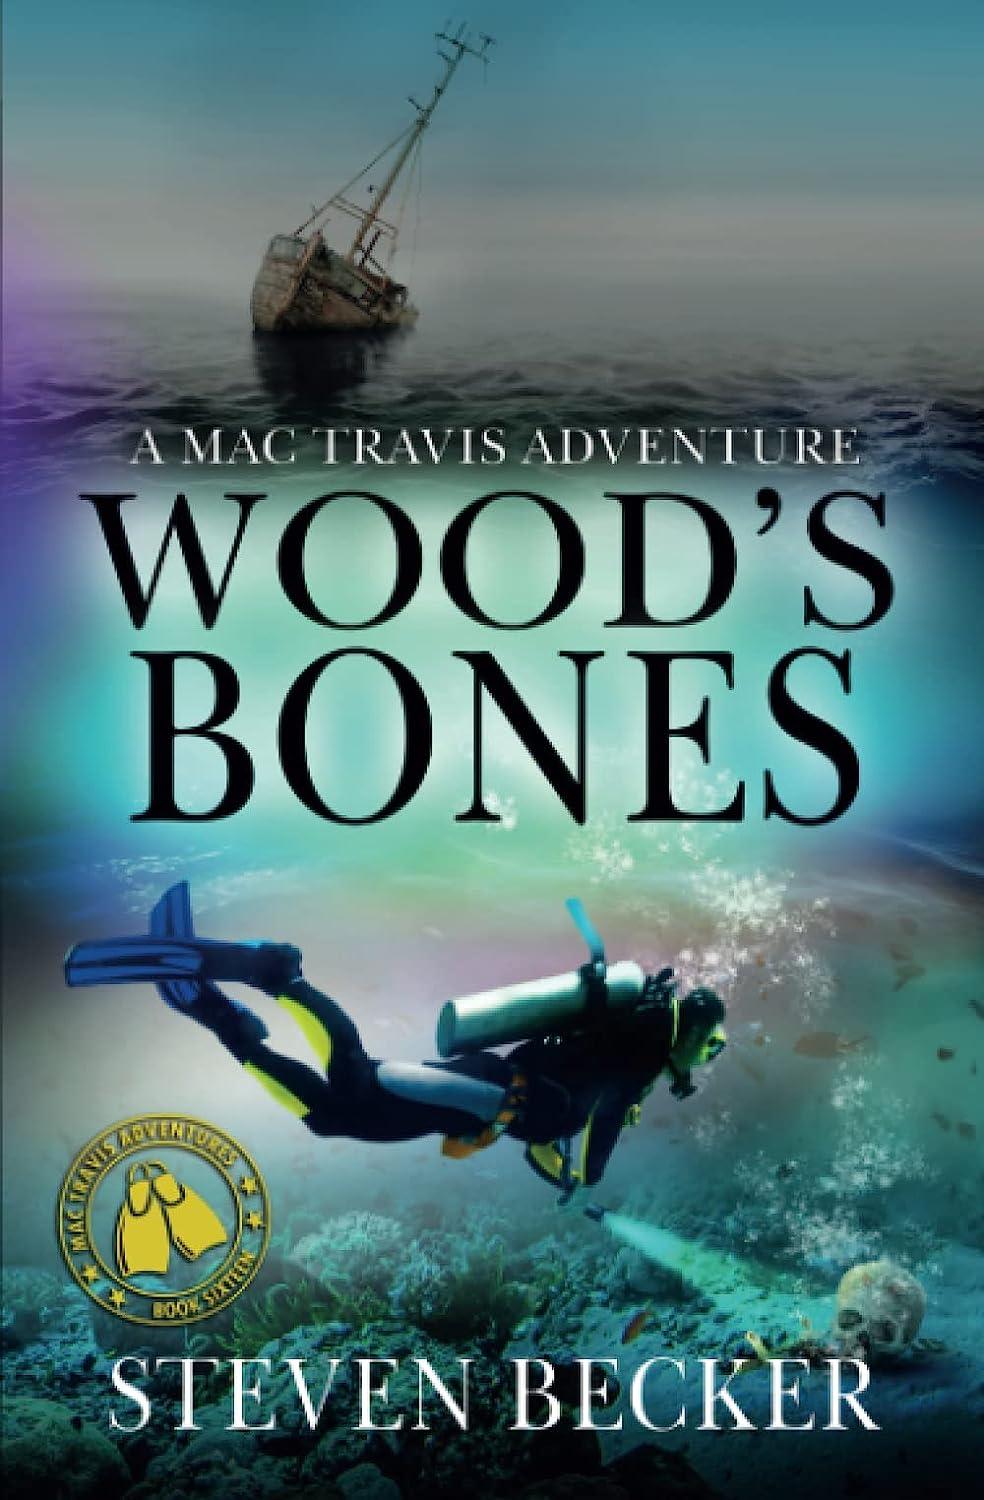 woods bones a mac travis adventure 1st edition steven becker b0bzf7l1qc, 979-8388733603